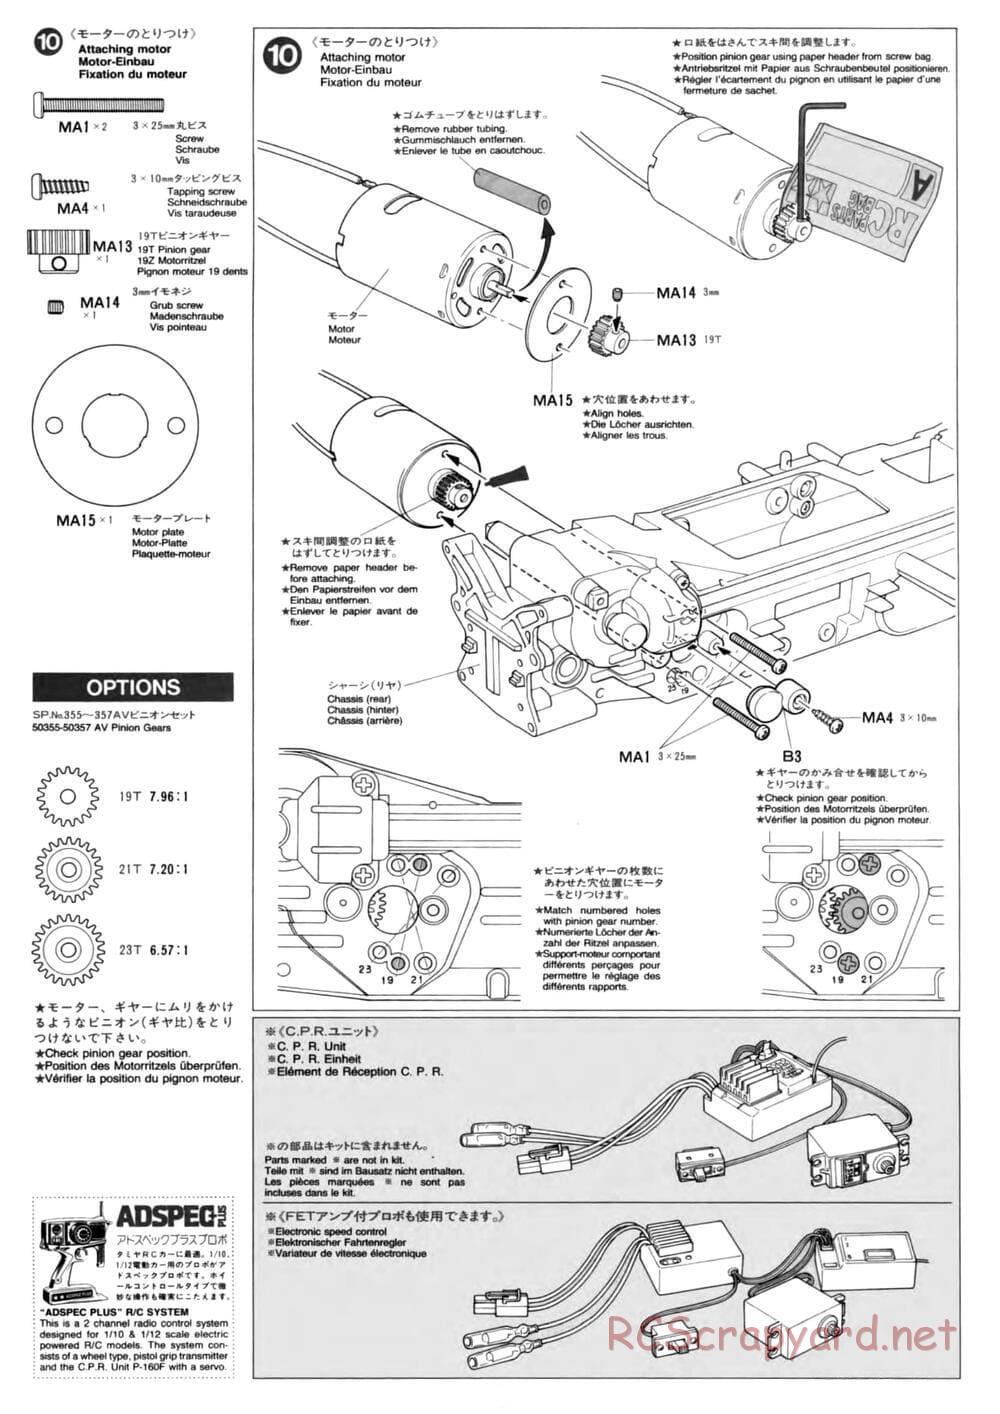 Tamiya - TL-01 Chassis - Manual - Page 8